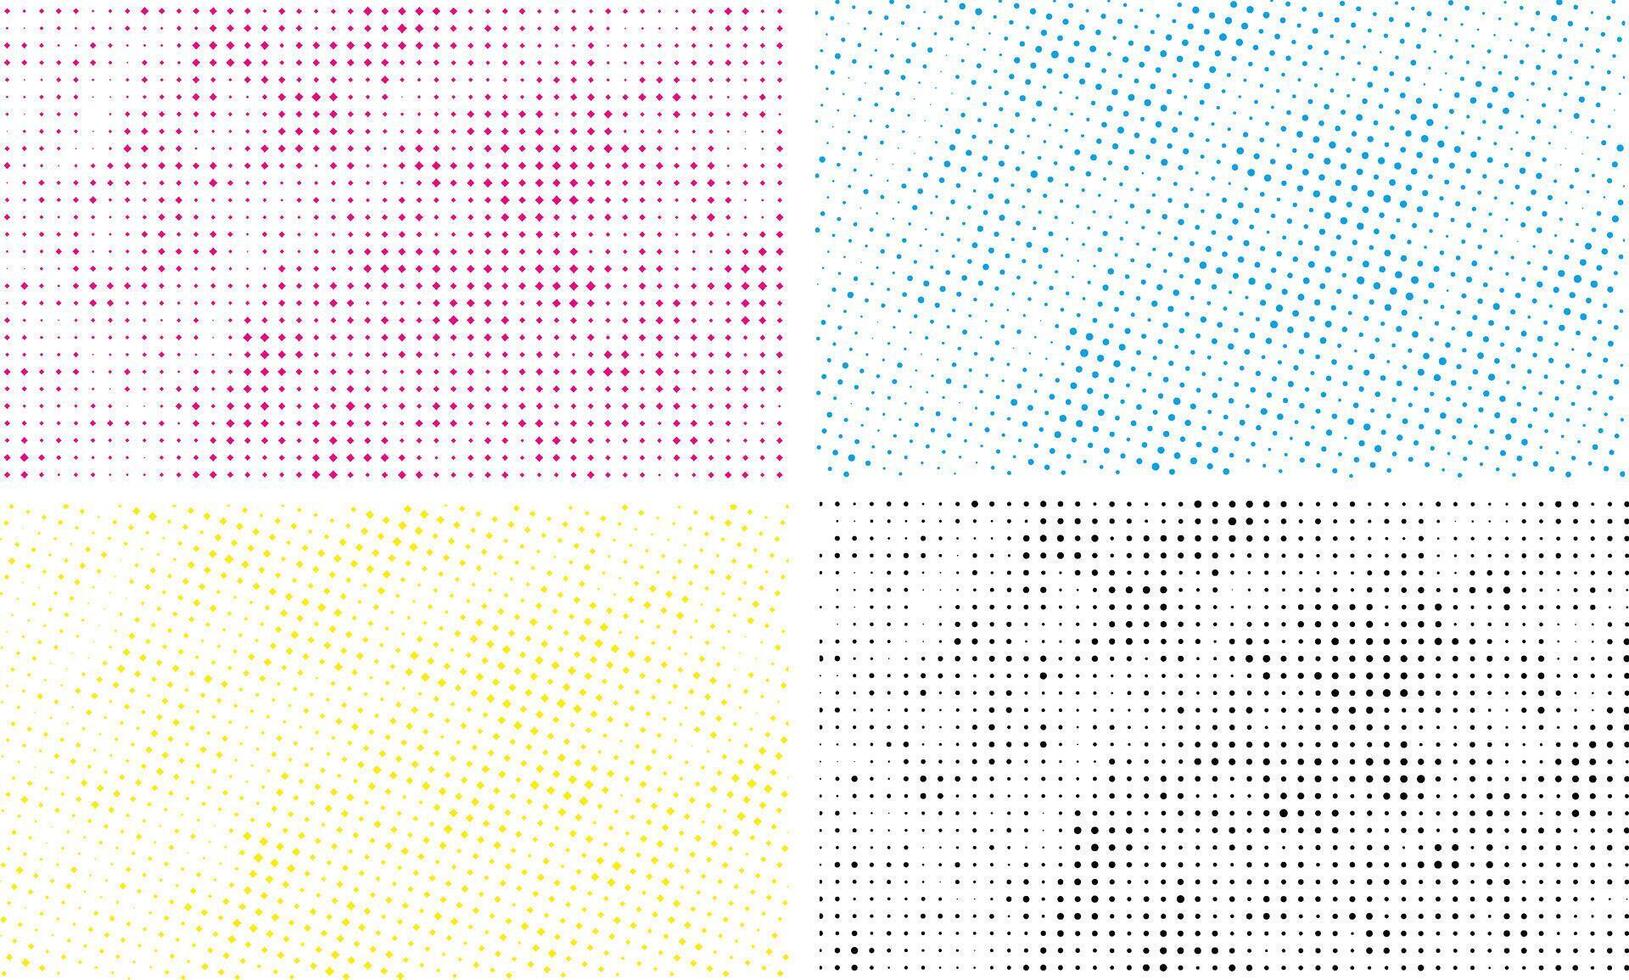 uppsättning av fyra annorlunda färgad halvton mönster av cmyk punkt, abstrakt bakgrund med fyrkant punkt effekt bunt, vektor